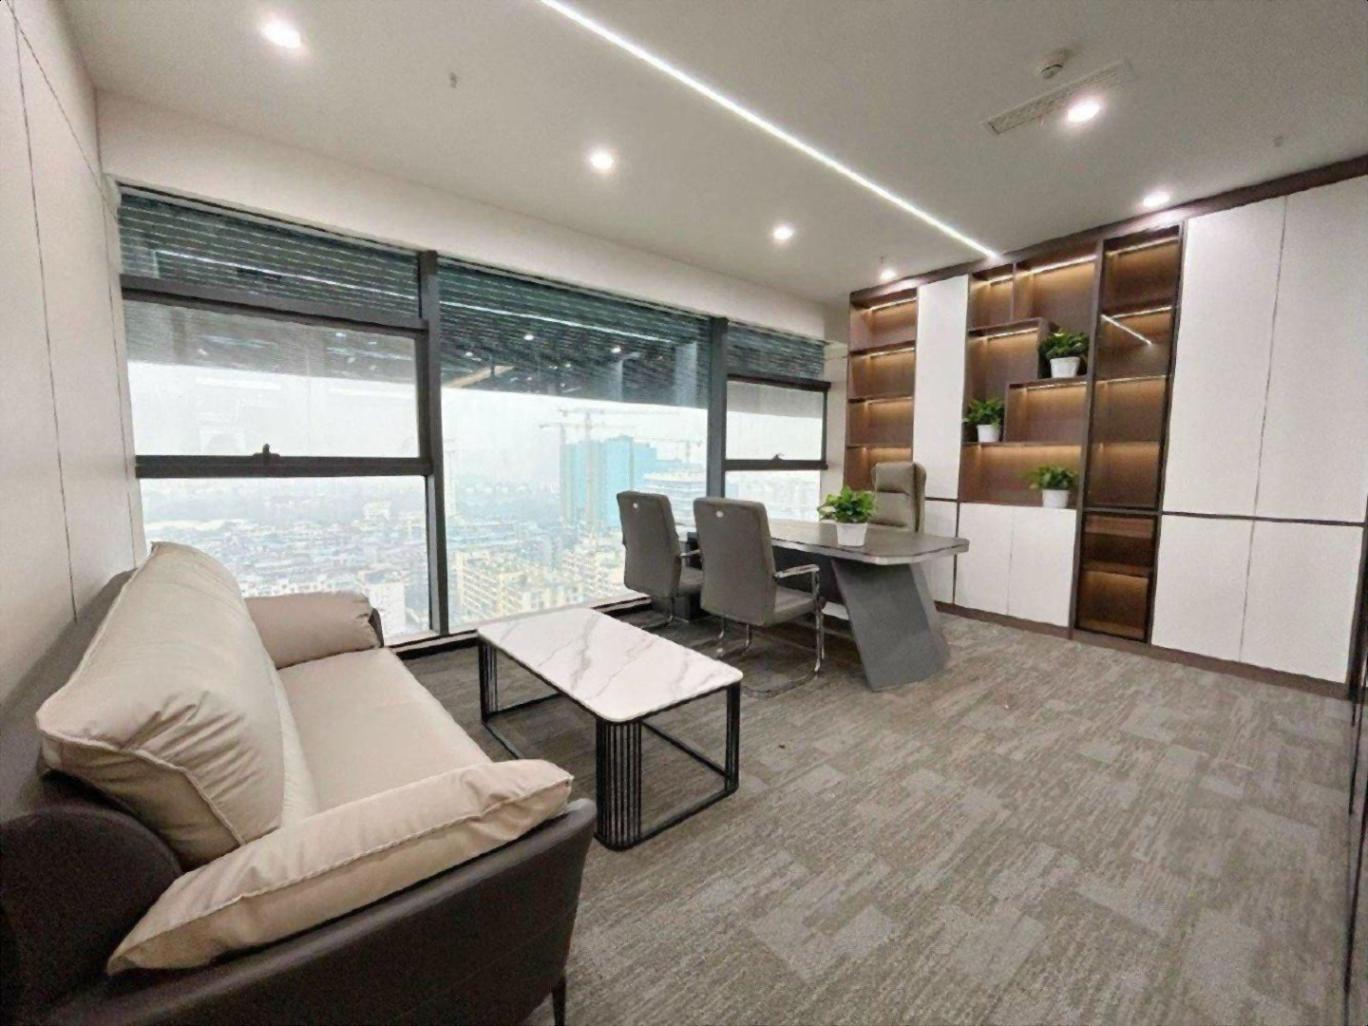 南山科技园深圳湾科技生态园520平精装办公室双面采光+